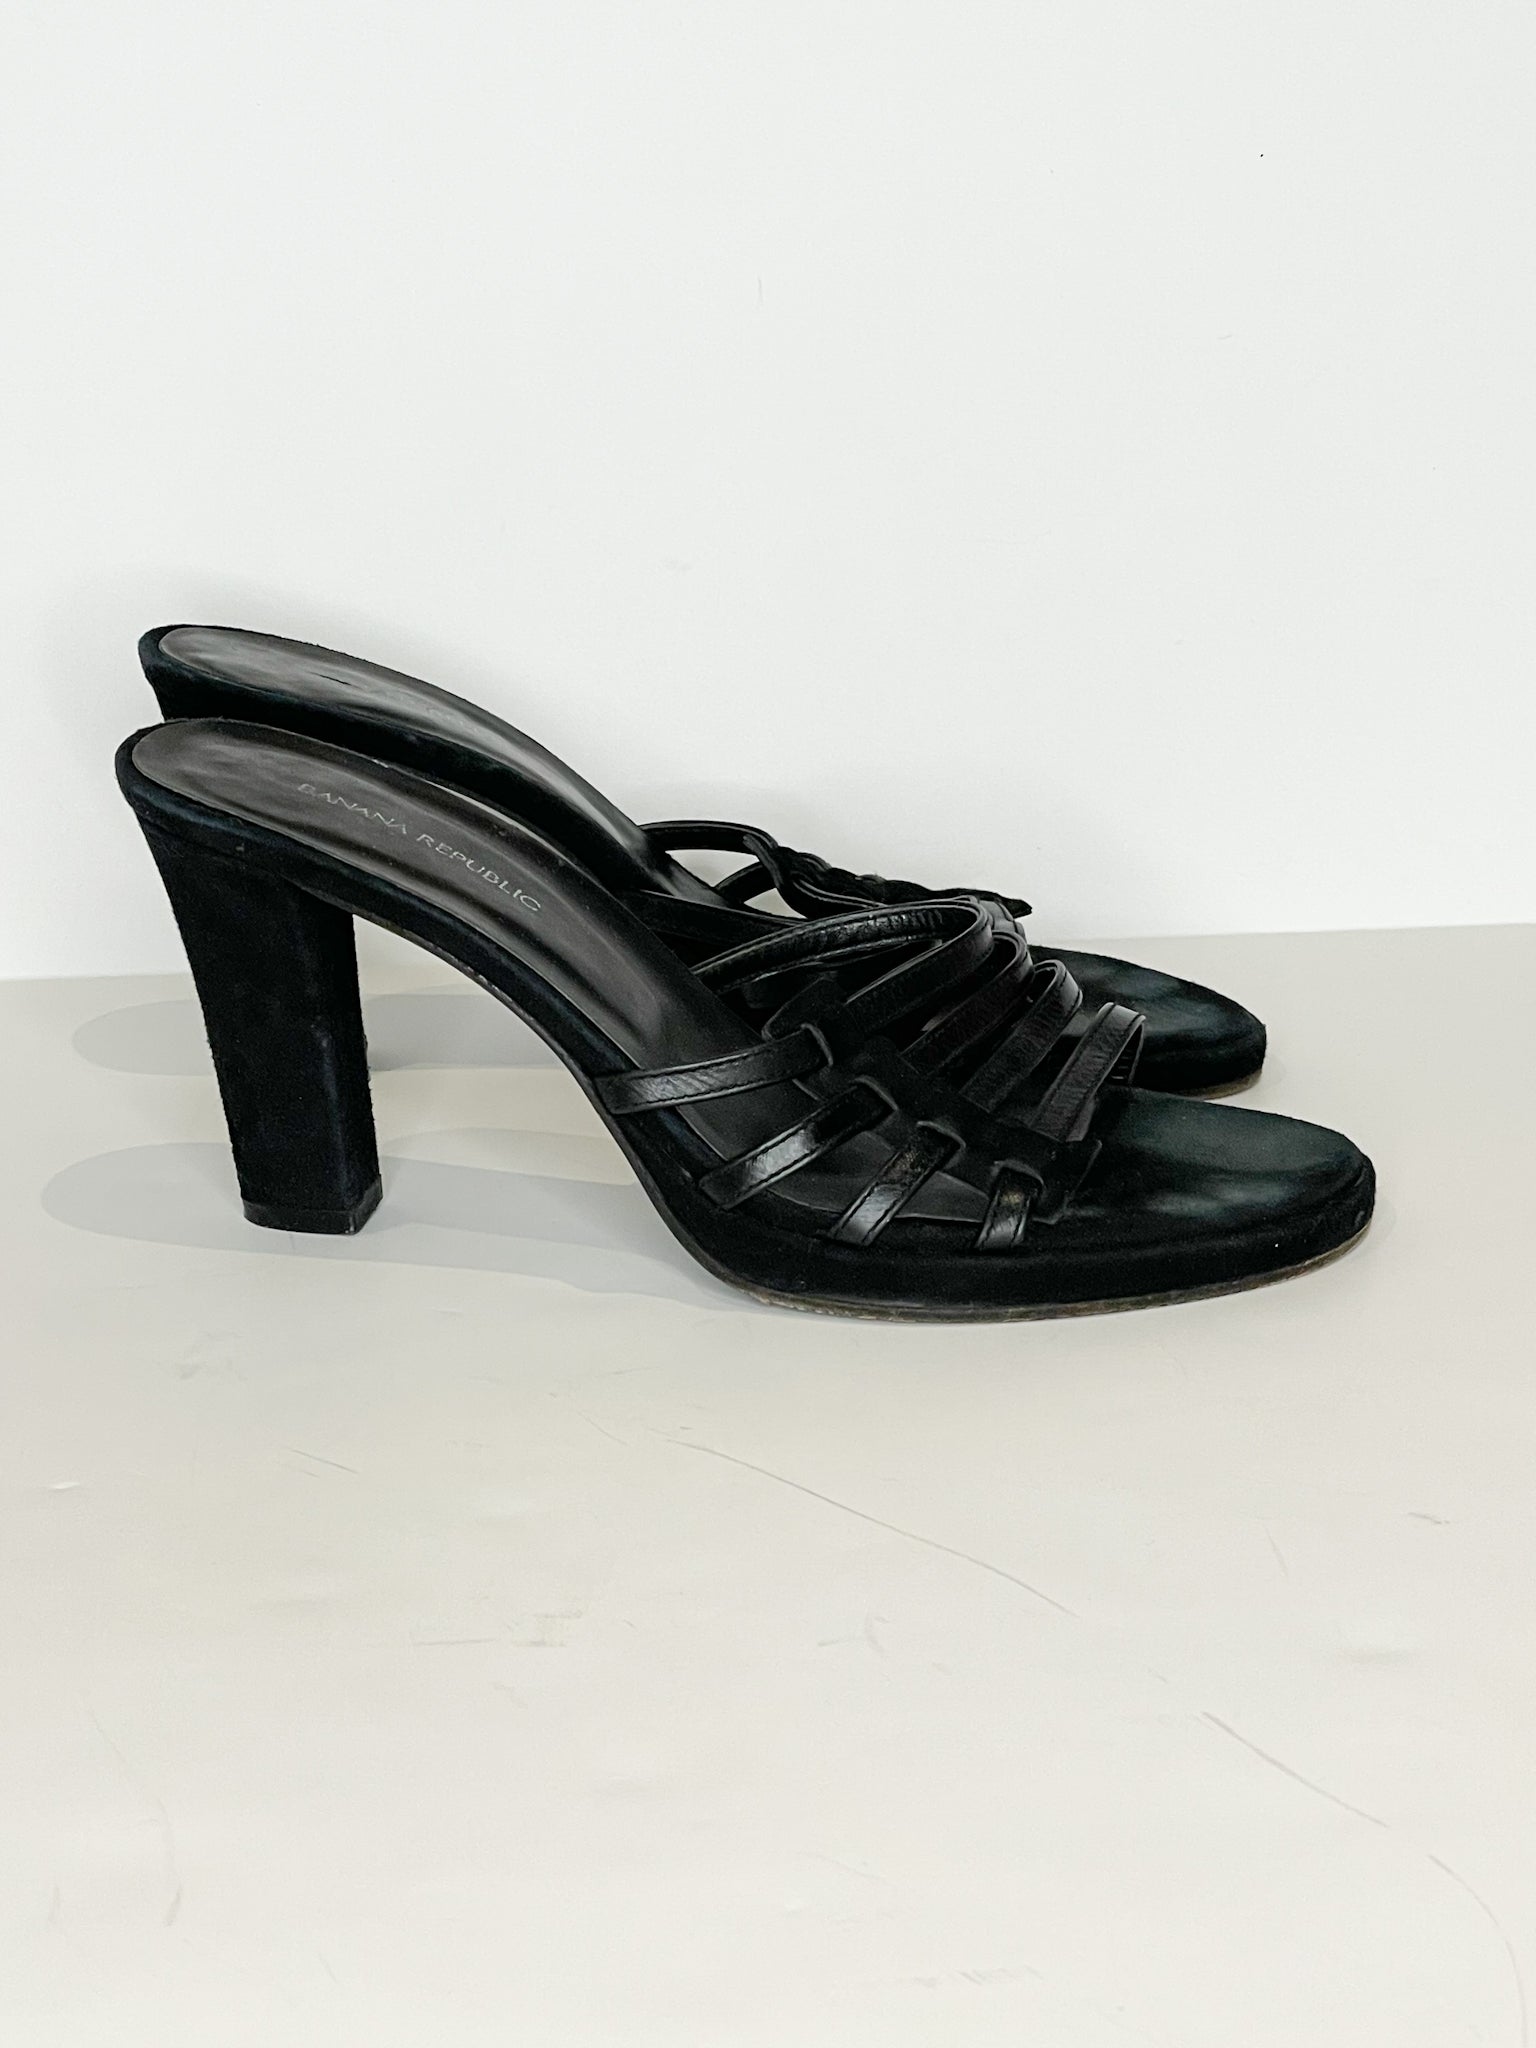 BANANA REPUBLIC sz 9.5 black suede Adelia D'Orsay pump heels | eBay